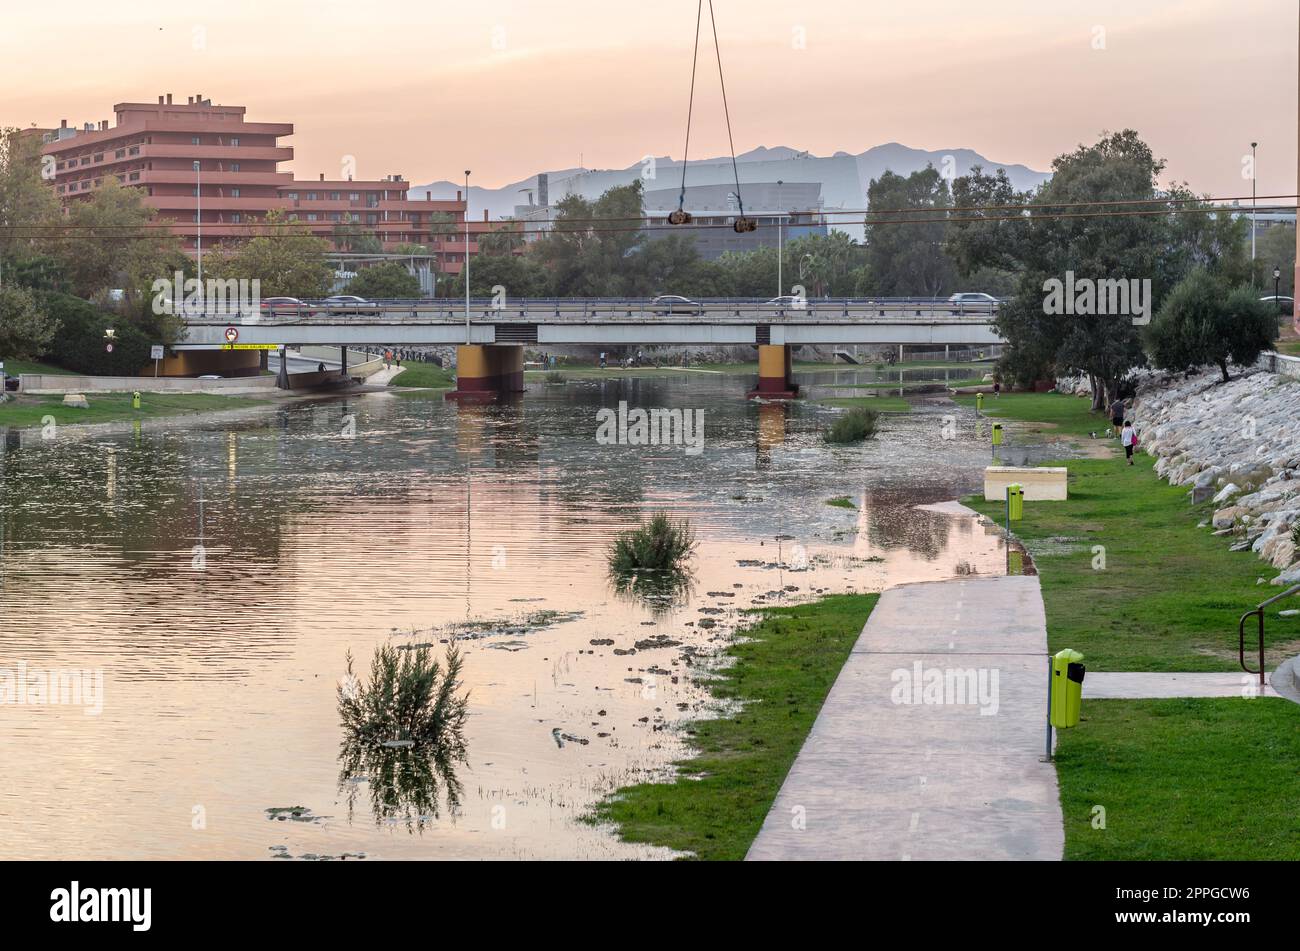 FUENGIROLA, SPANIEN - 11. OKTOBER 2021: Überschwemmungsgebiet am Ufer des Flusses Fuengirola während eines Sturms in der Stadt Fuengirola, Andalusien, Südspanien Stockfoto